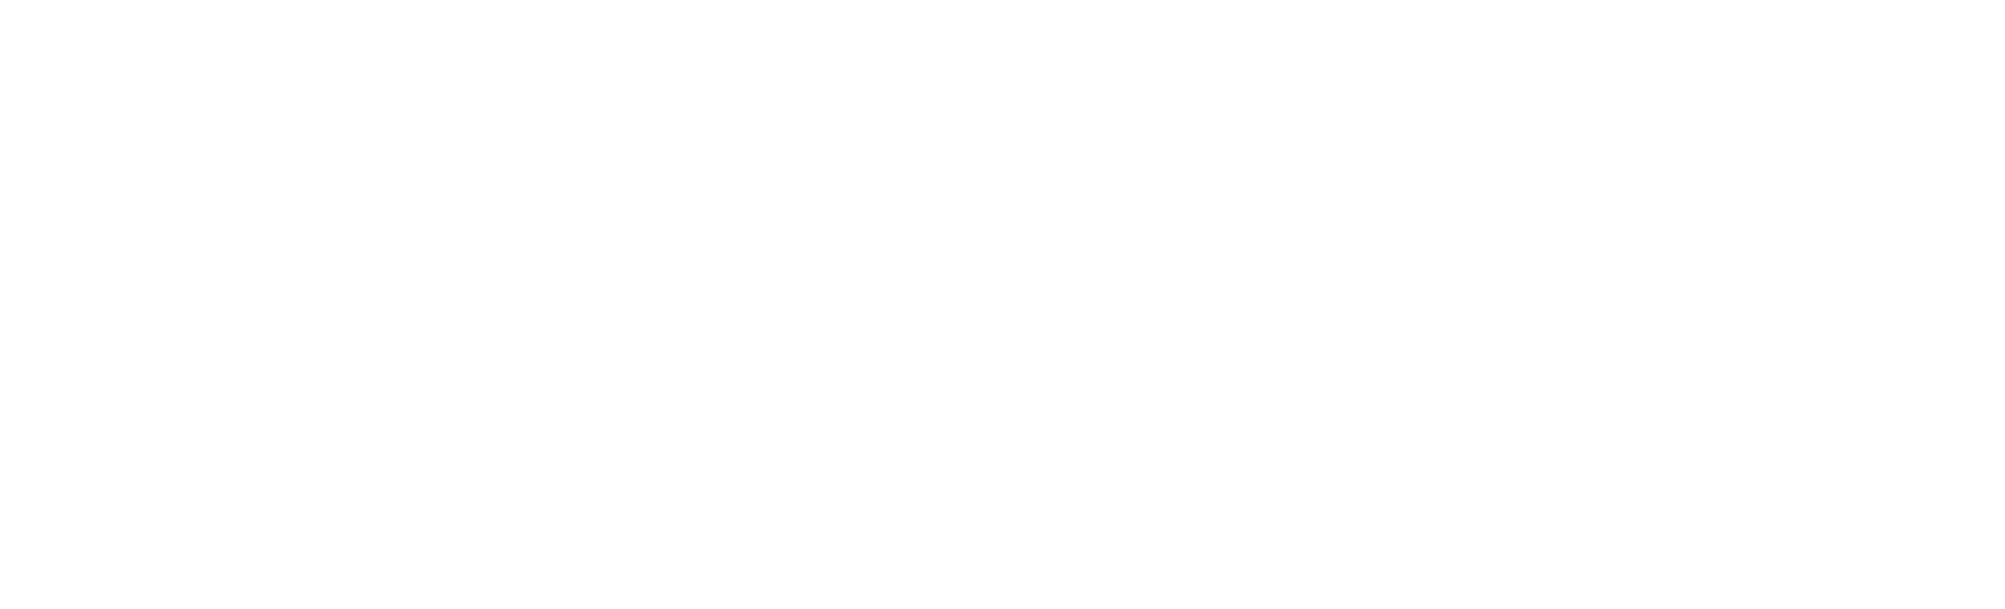 第73回カンヌ国際映画祭オフィシャル・セレクション PENINSULA